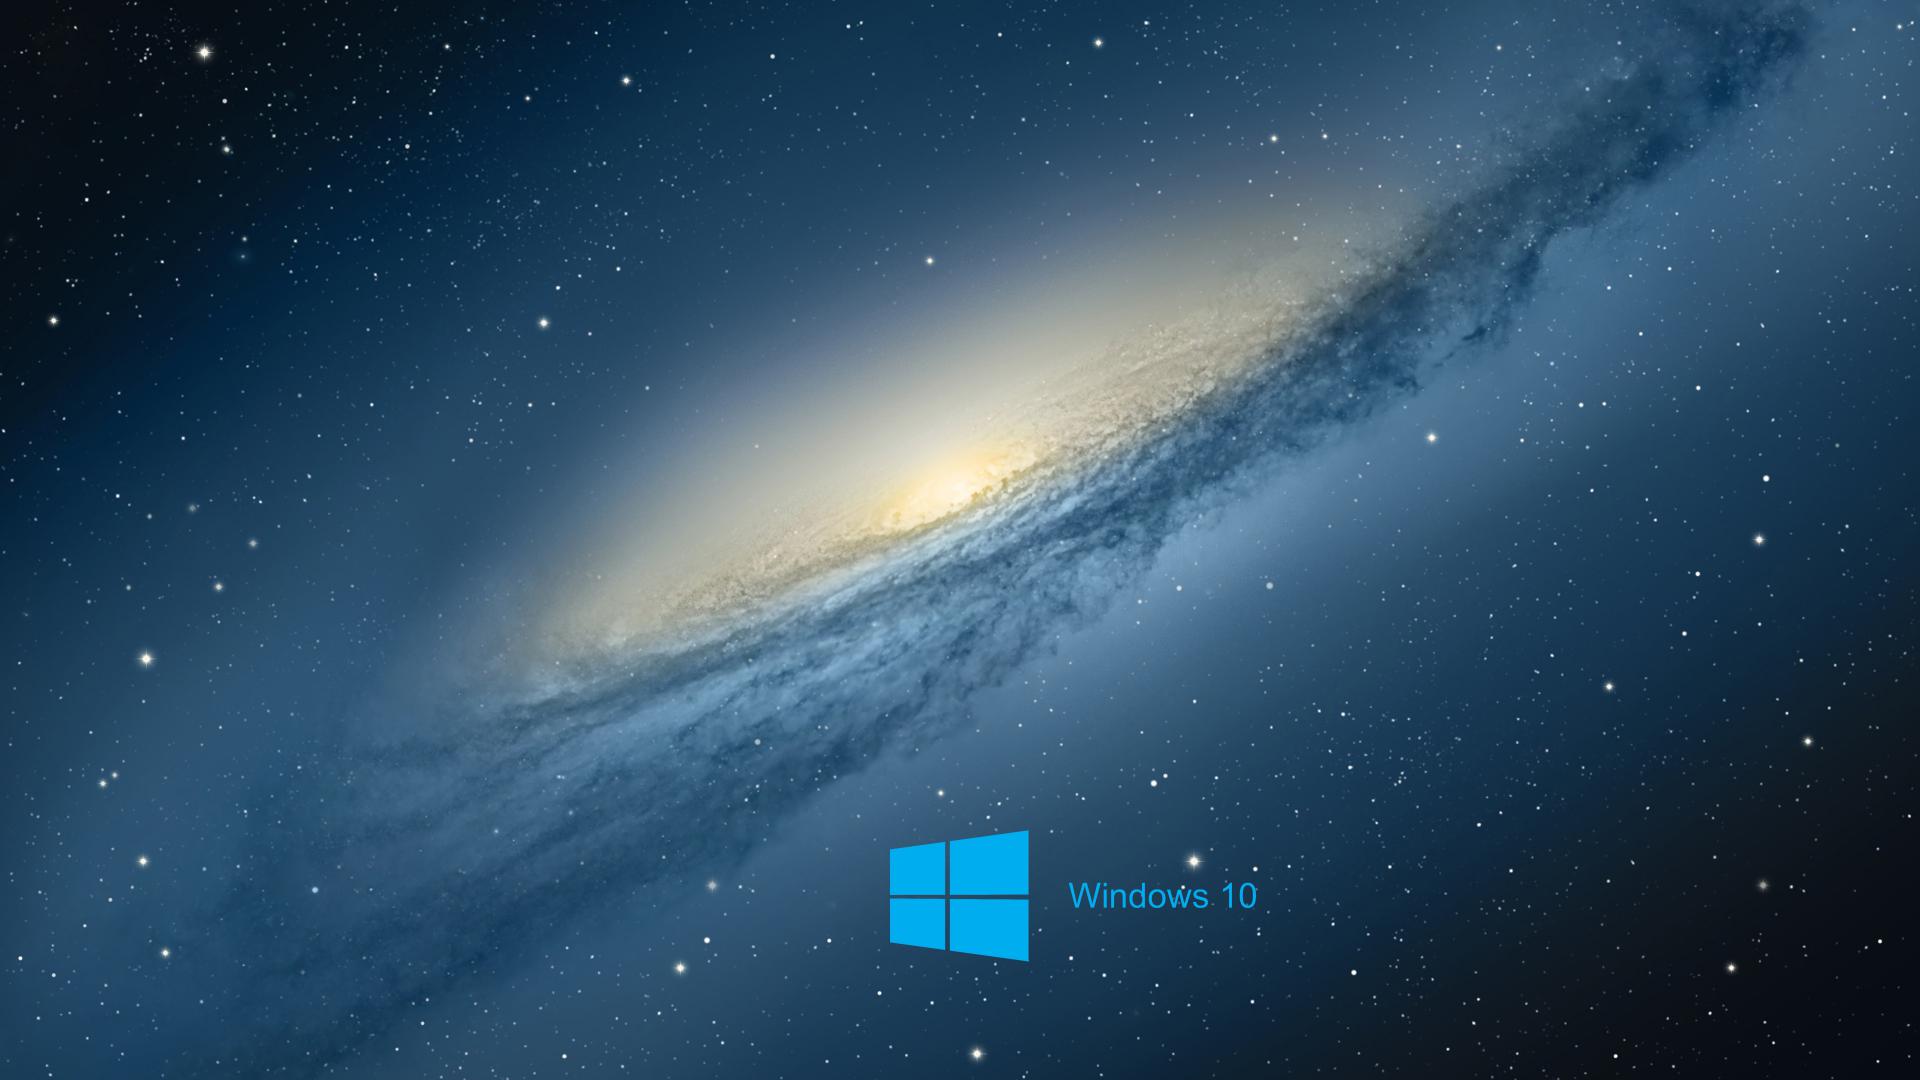 Space Wallpaper Windows 10 - WallpaperSafari